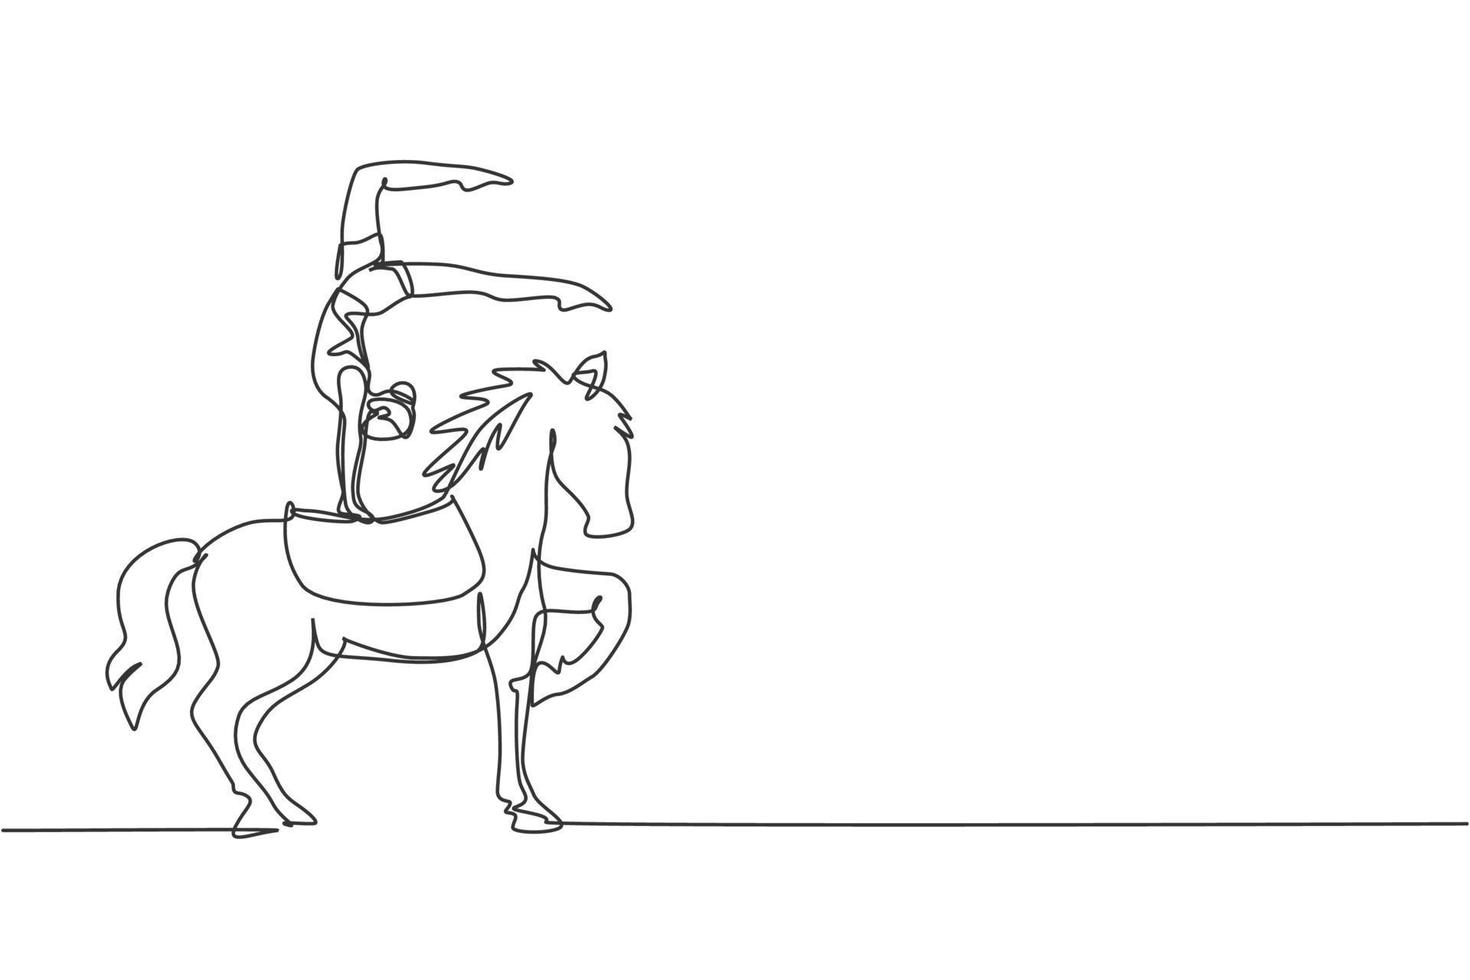 continu één lijntekening een vrouwelijke acrobaat presteert op een circuspaard terwijl ze een handstanddans te paard uitvoert. het paard tilt een van zijn benen op. enkele lijn tekenen ontwerp vectorillustratie vector